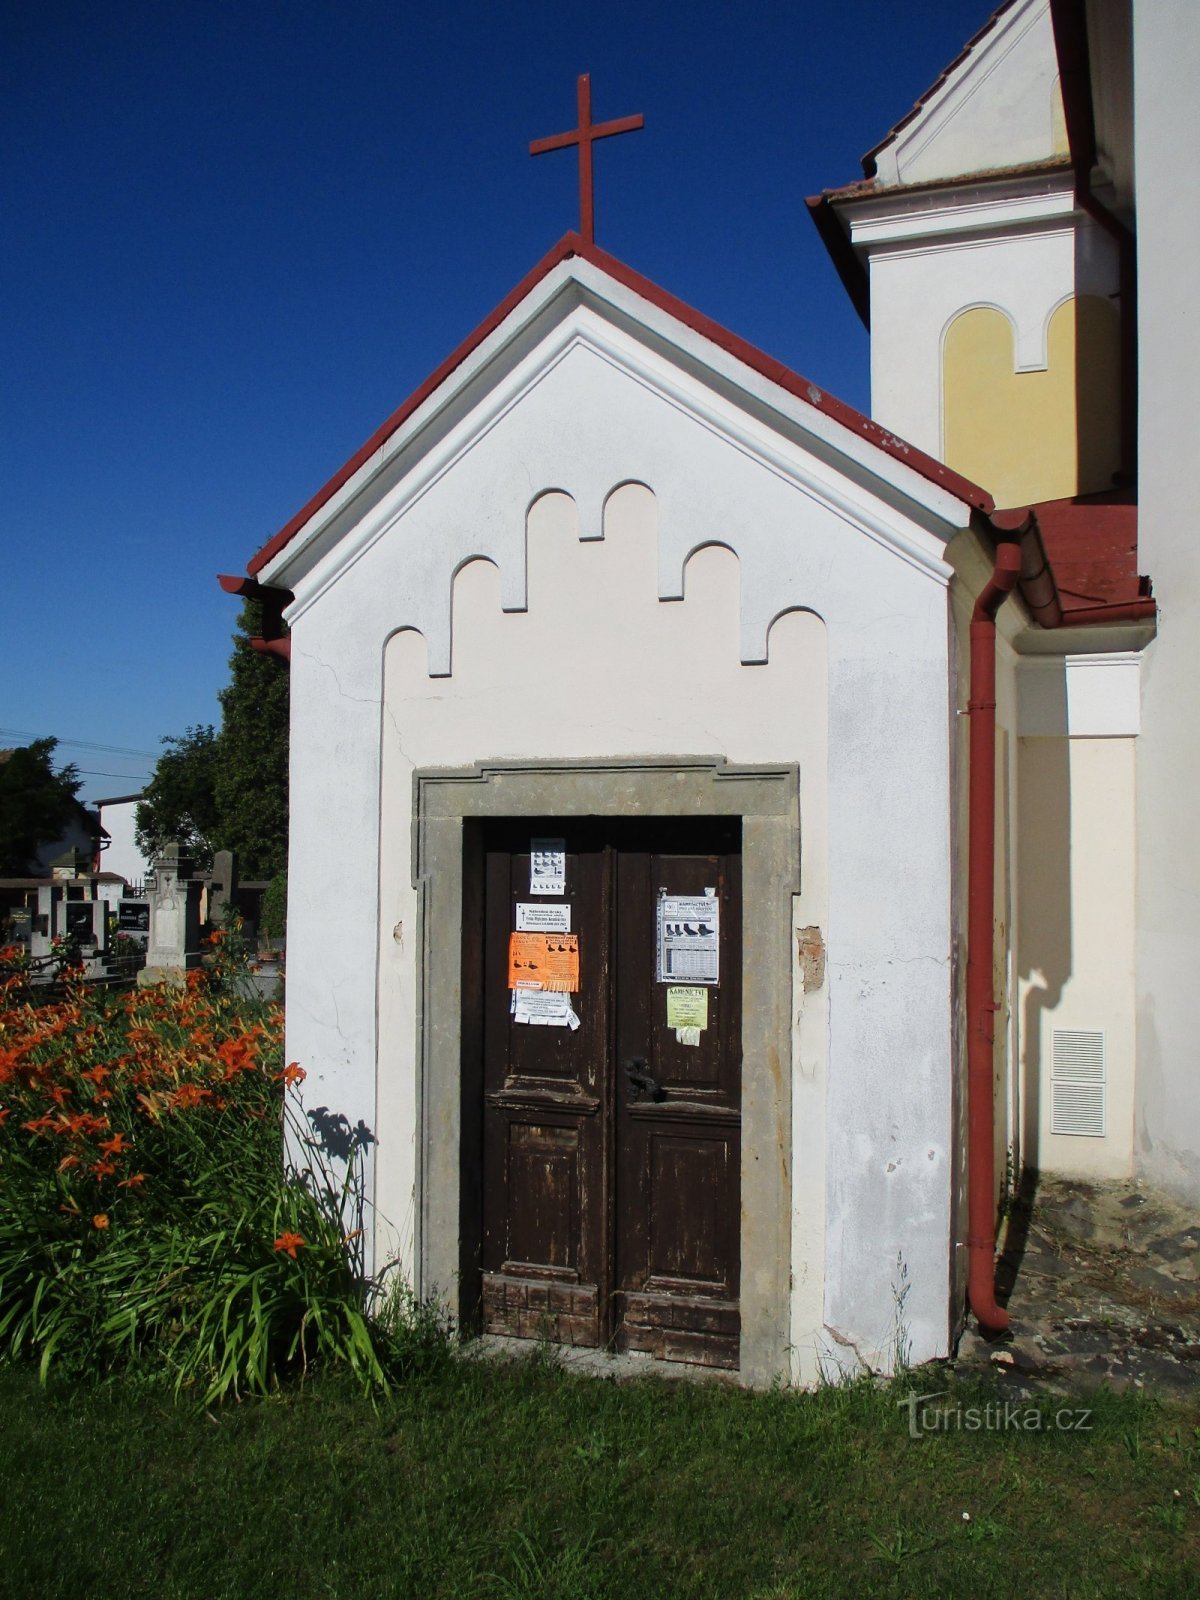 Église de St. Filip et Jakub (Mlékosrby, 5.7.2020/XNUMX/XNUMX)